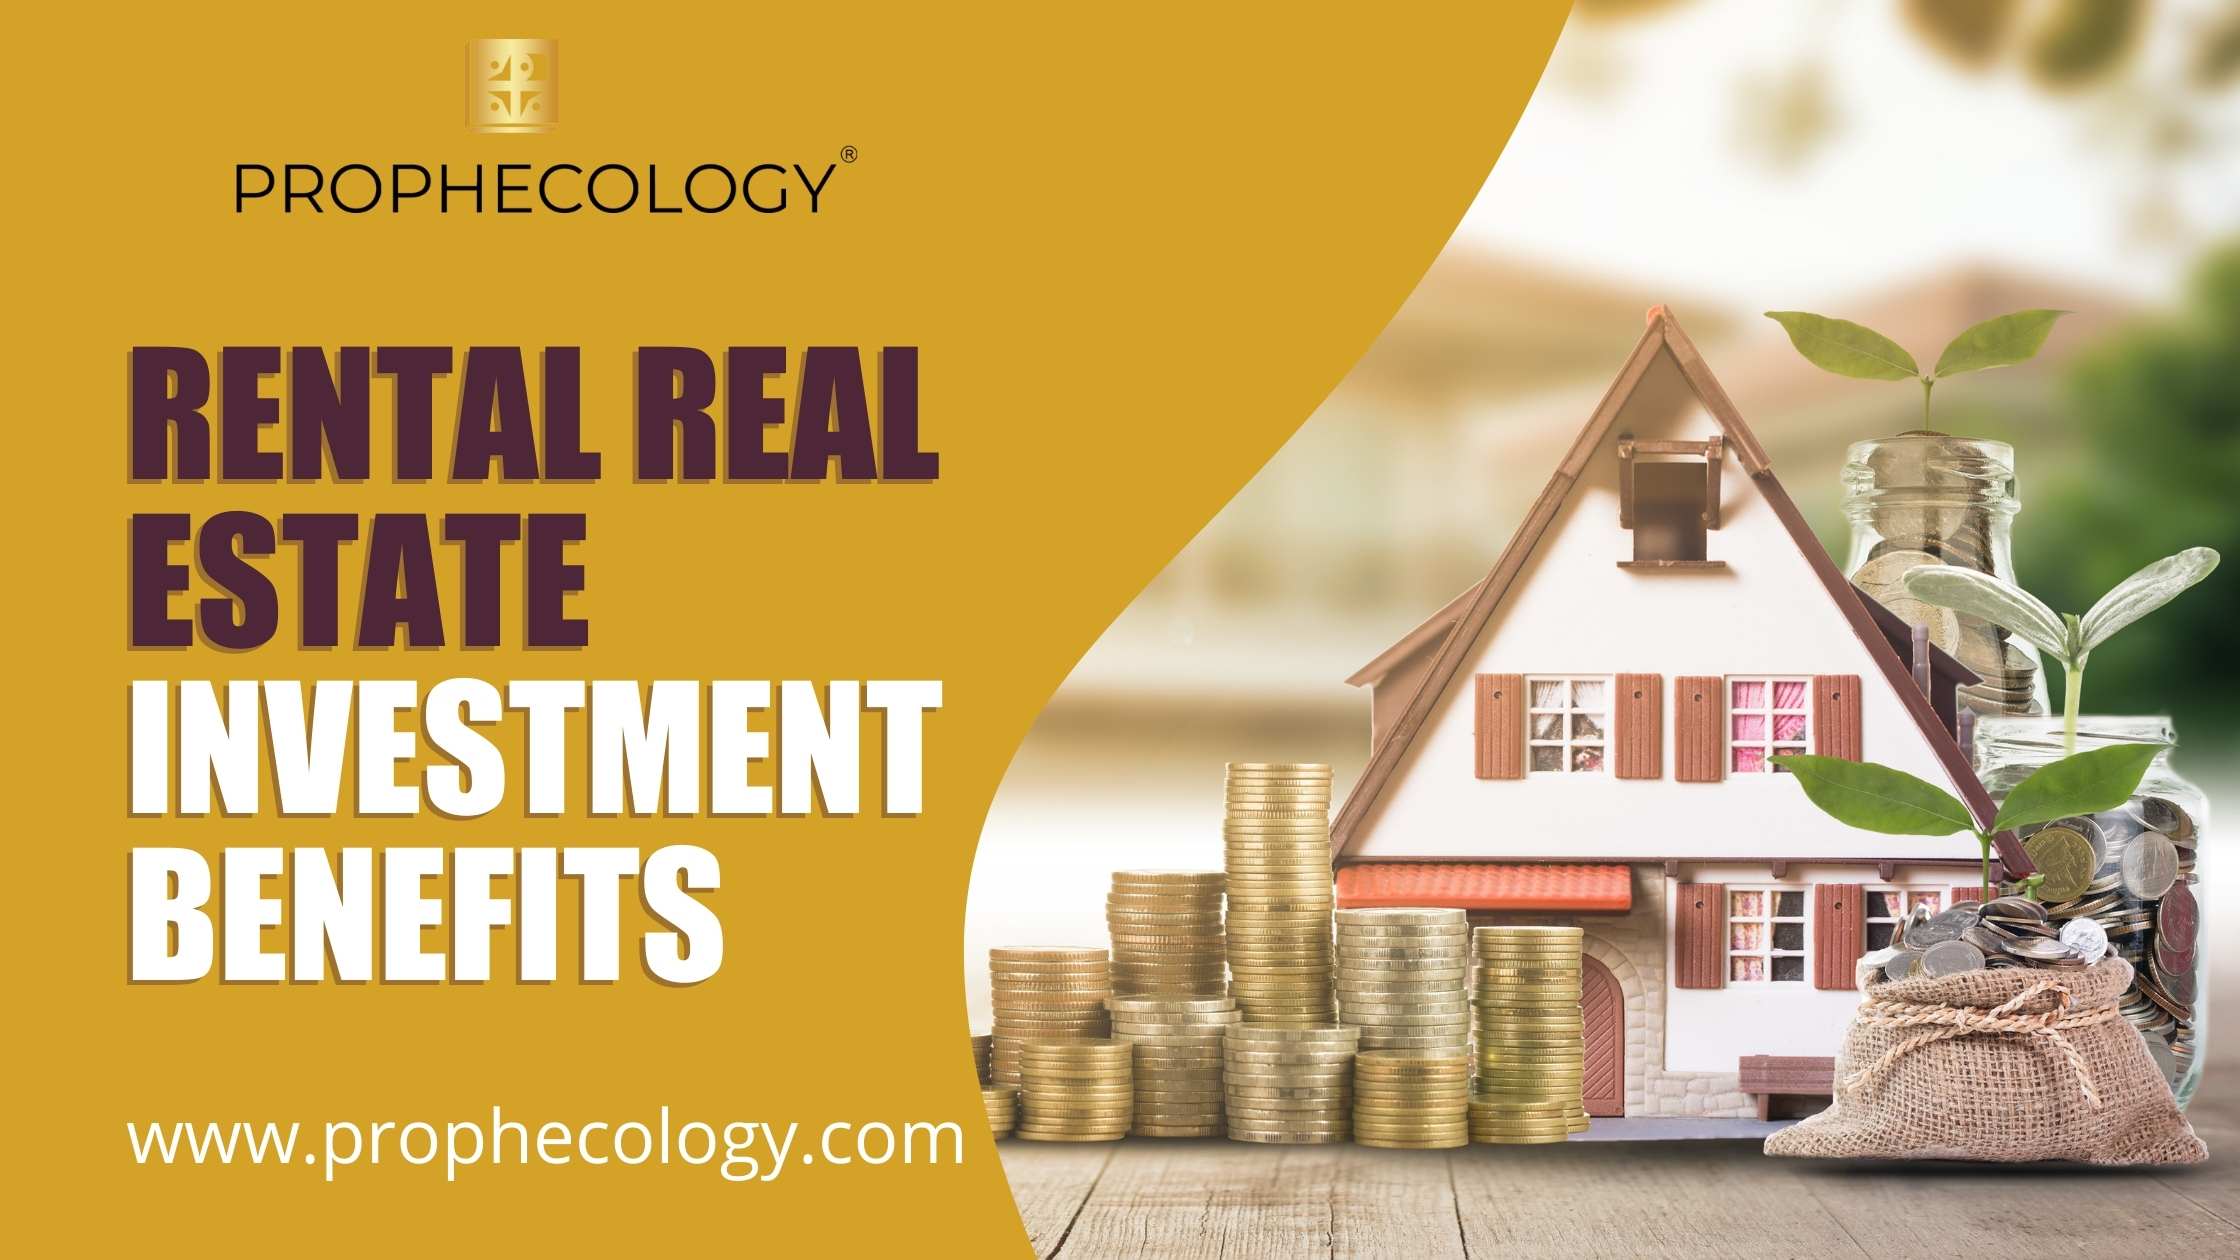 Real estate, Rental real estate, real estateinvestments